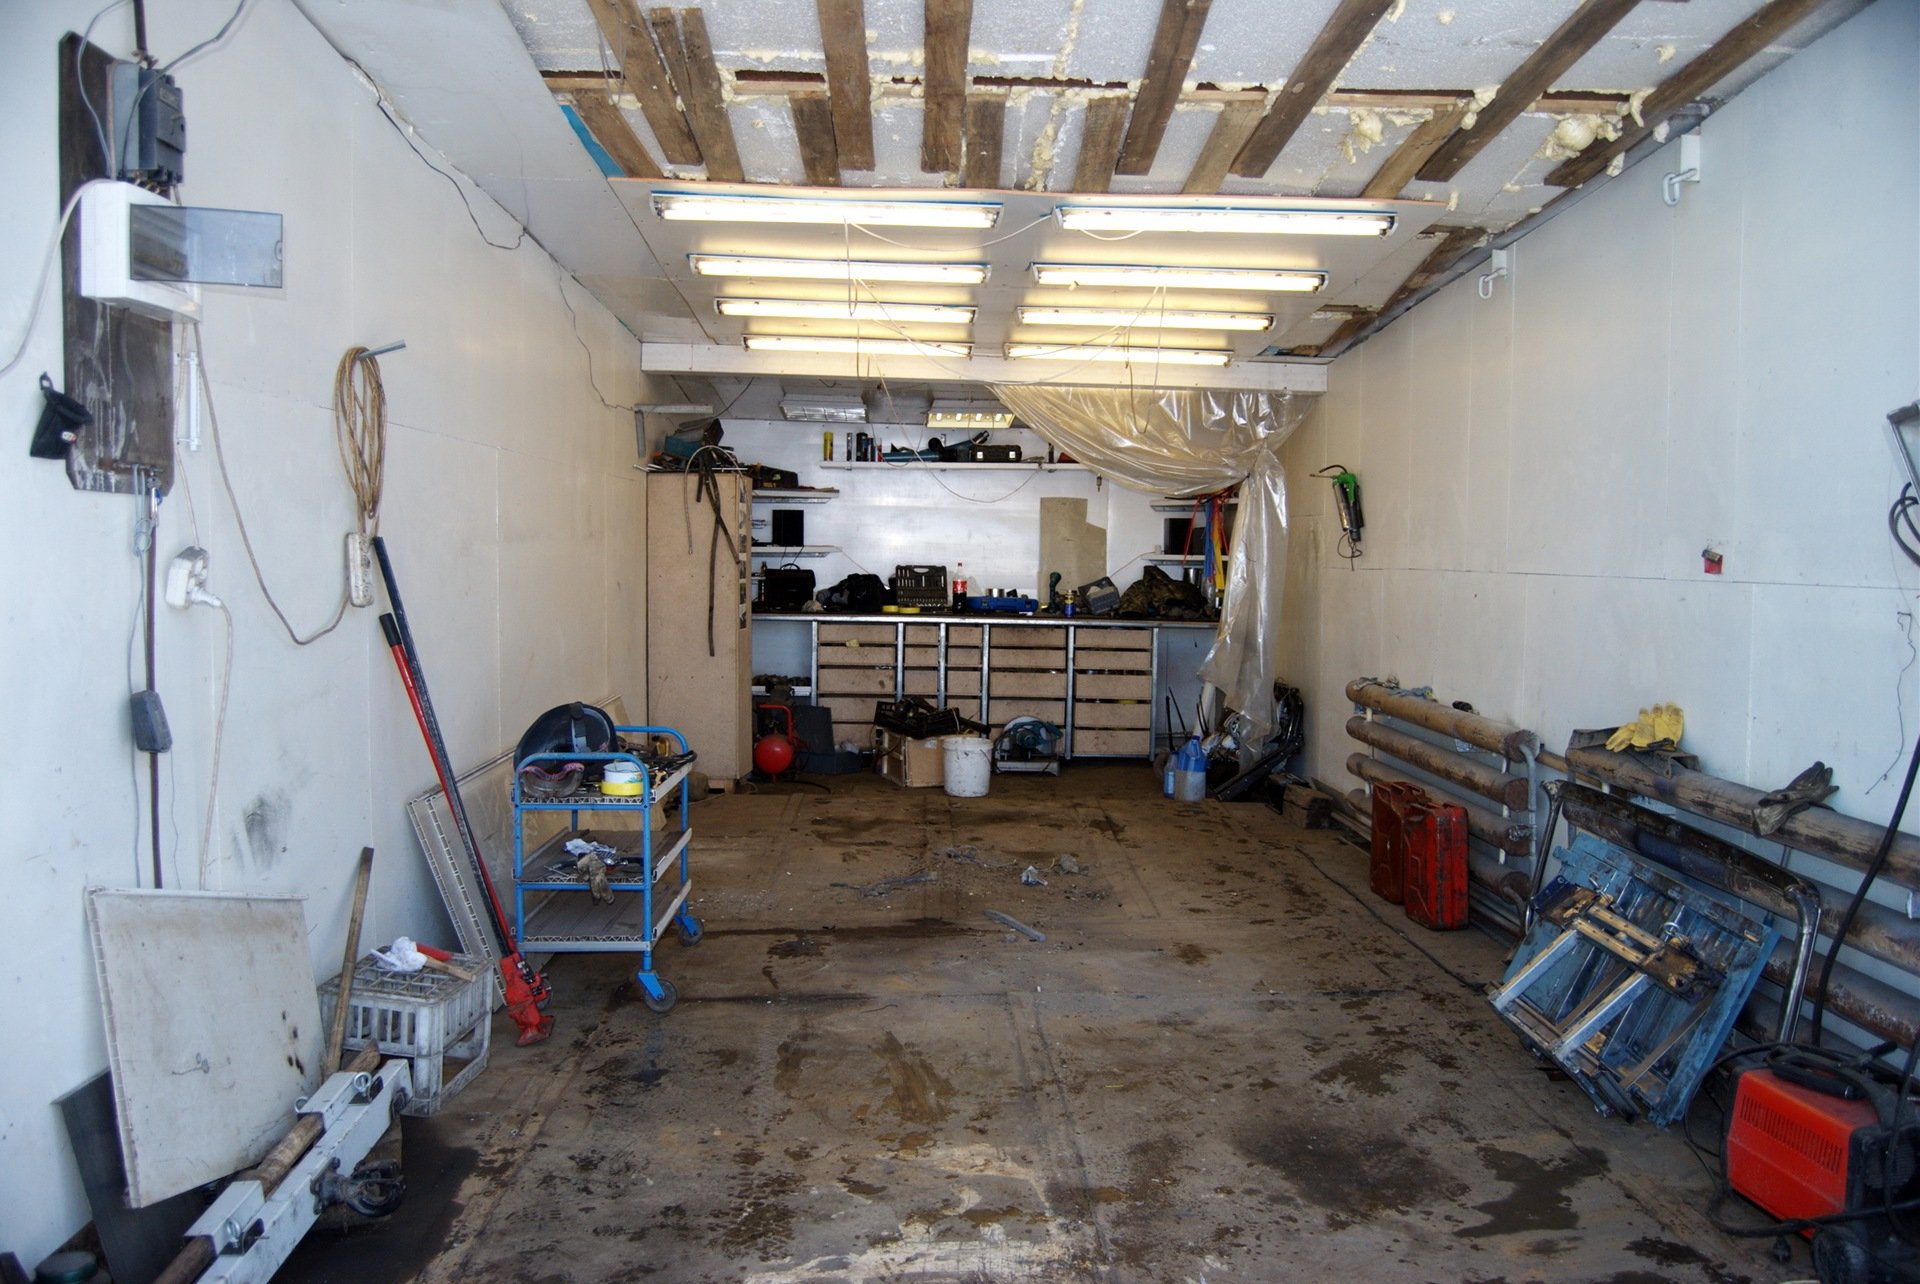 Реконструкция гаража. Гараж для авторемонта. Автомастерская в гараже. Гараж внутри. Интерьер автосервиса в гараже.